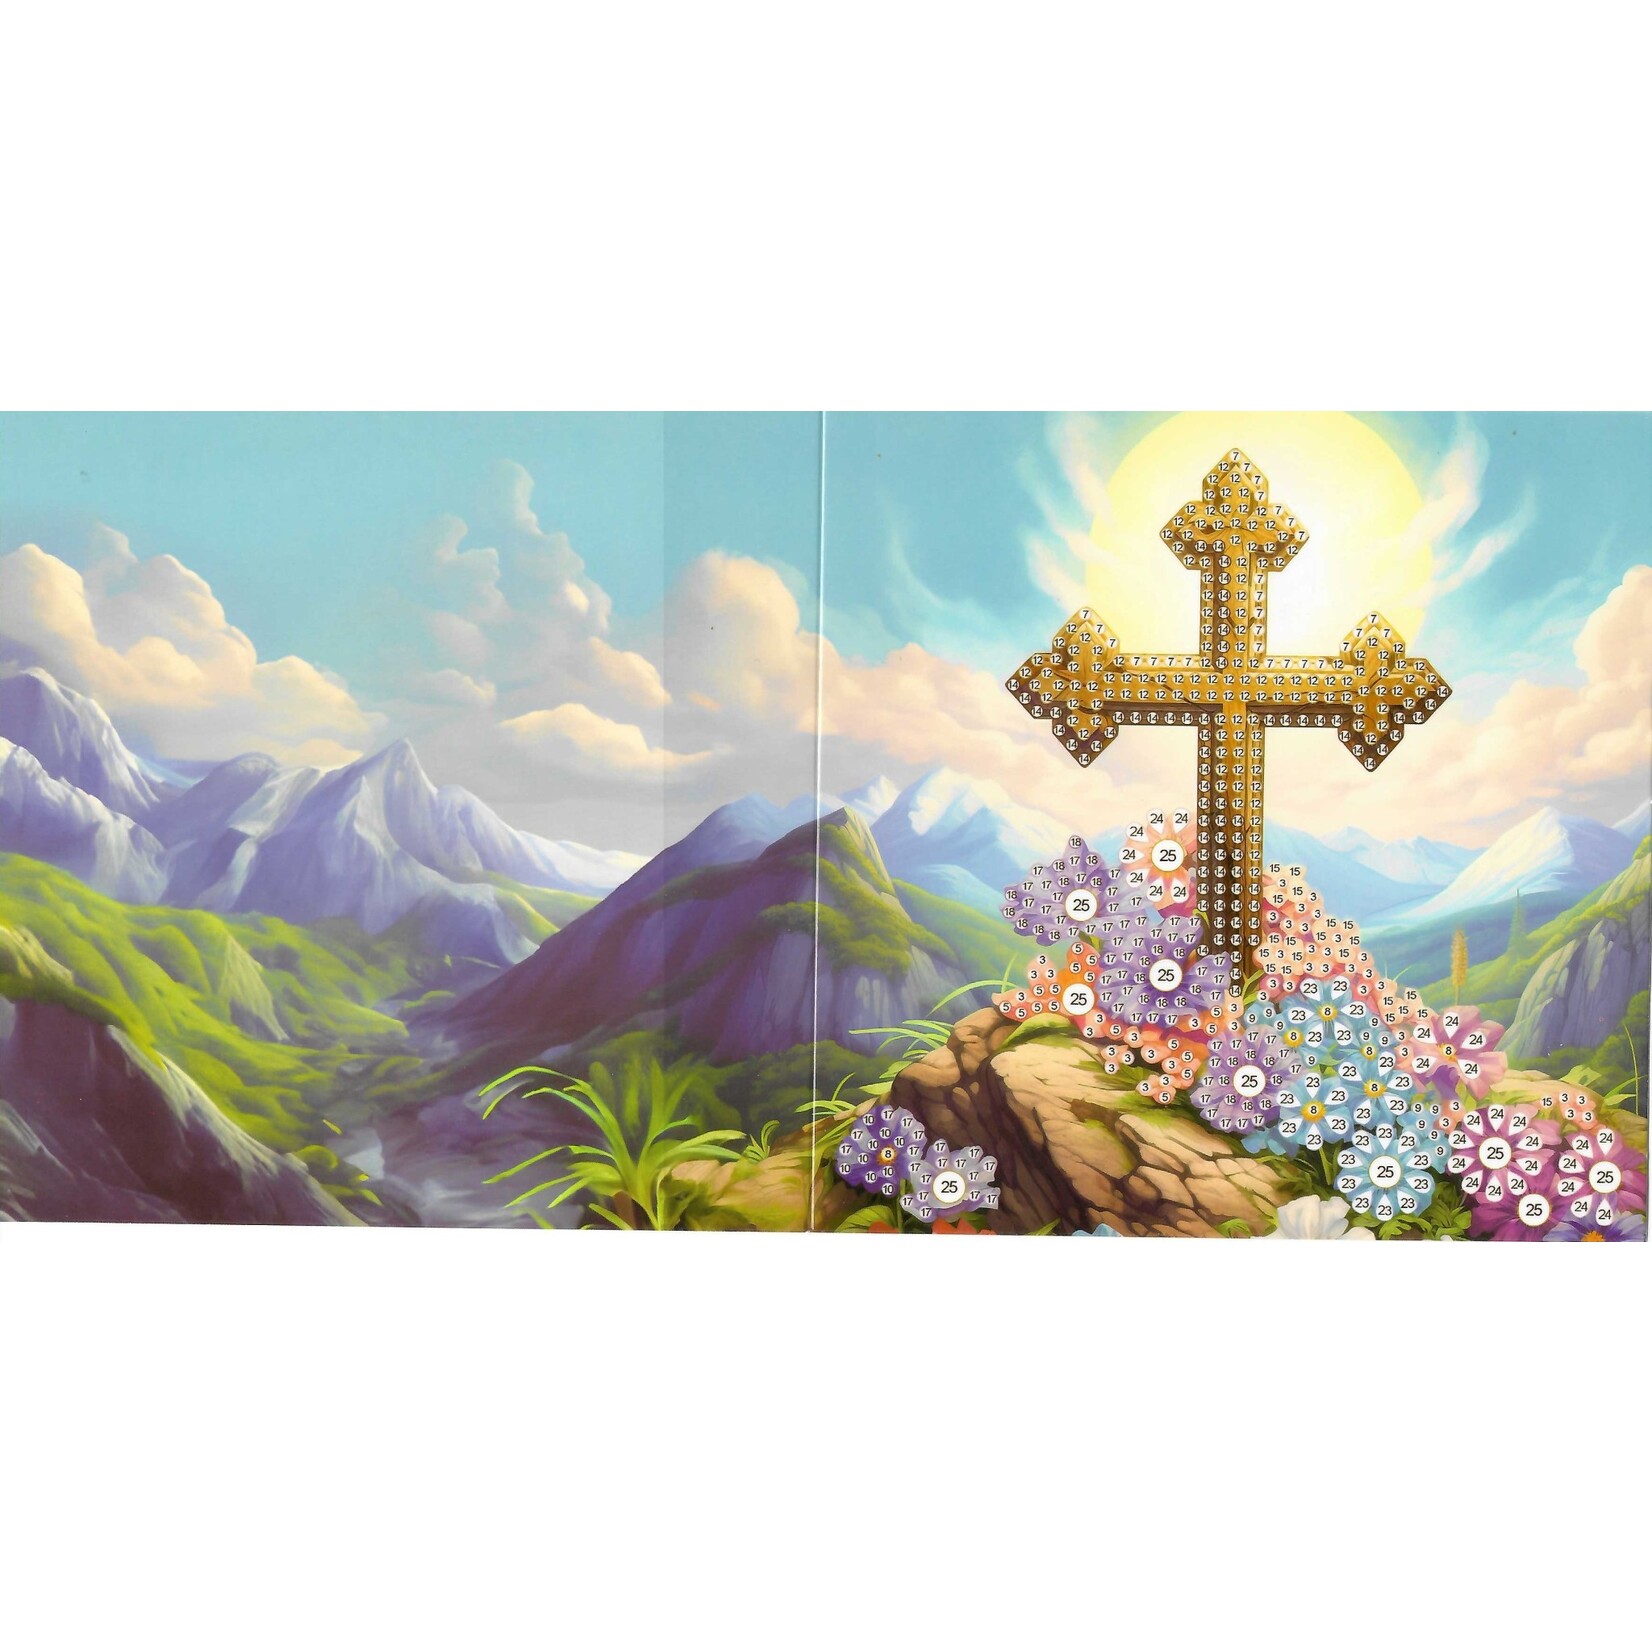 Wenskaart – Kruis 4 op een rots met bloemen